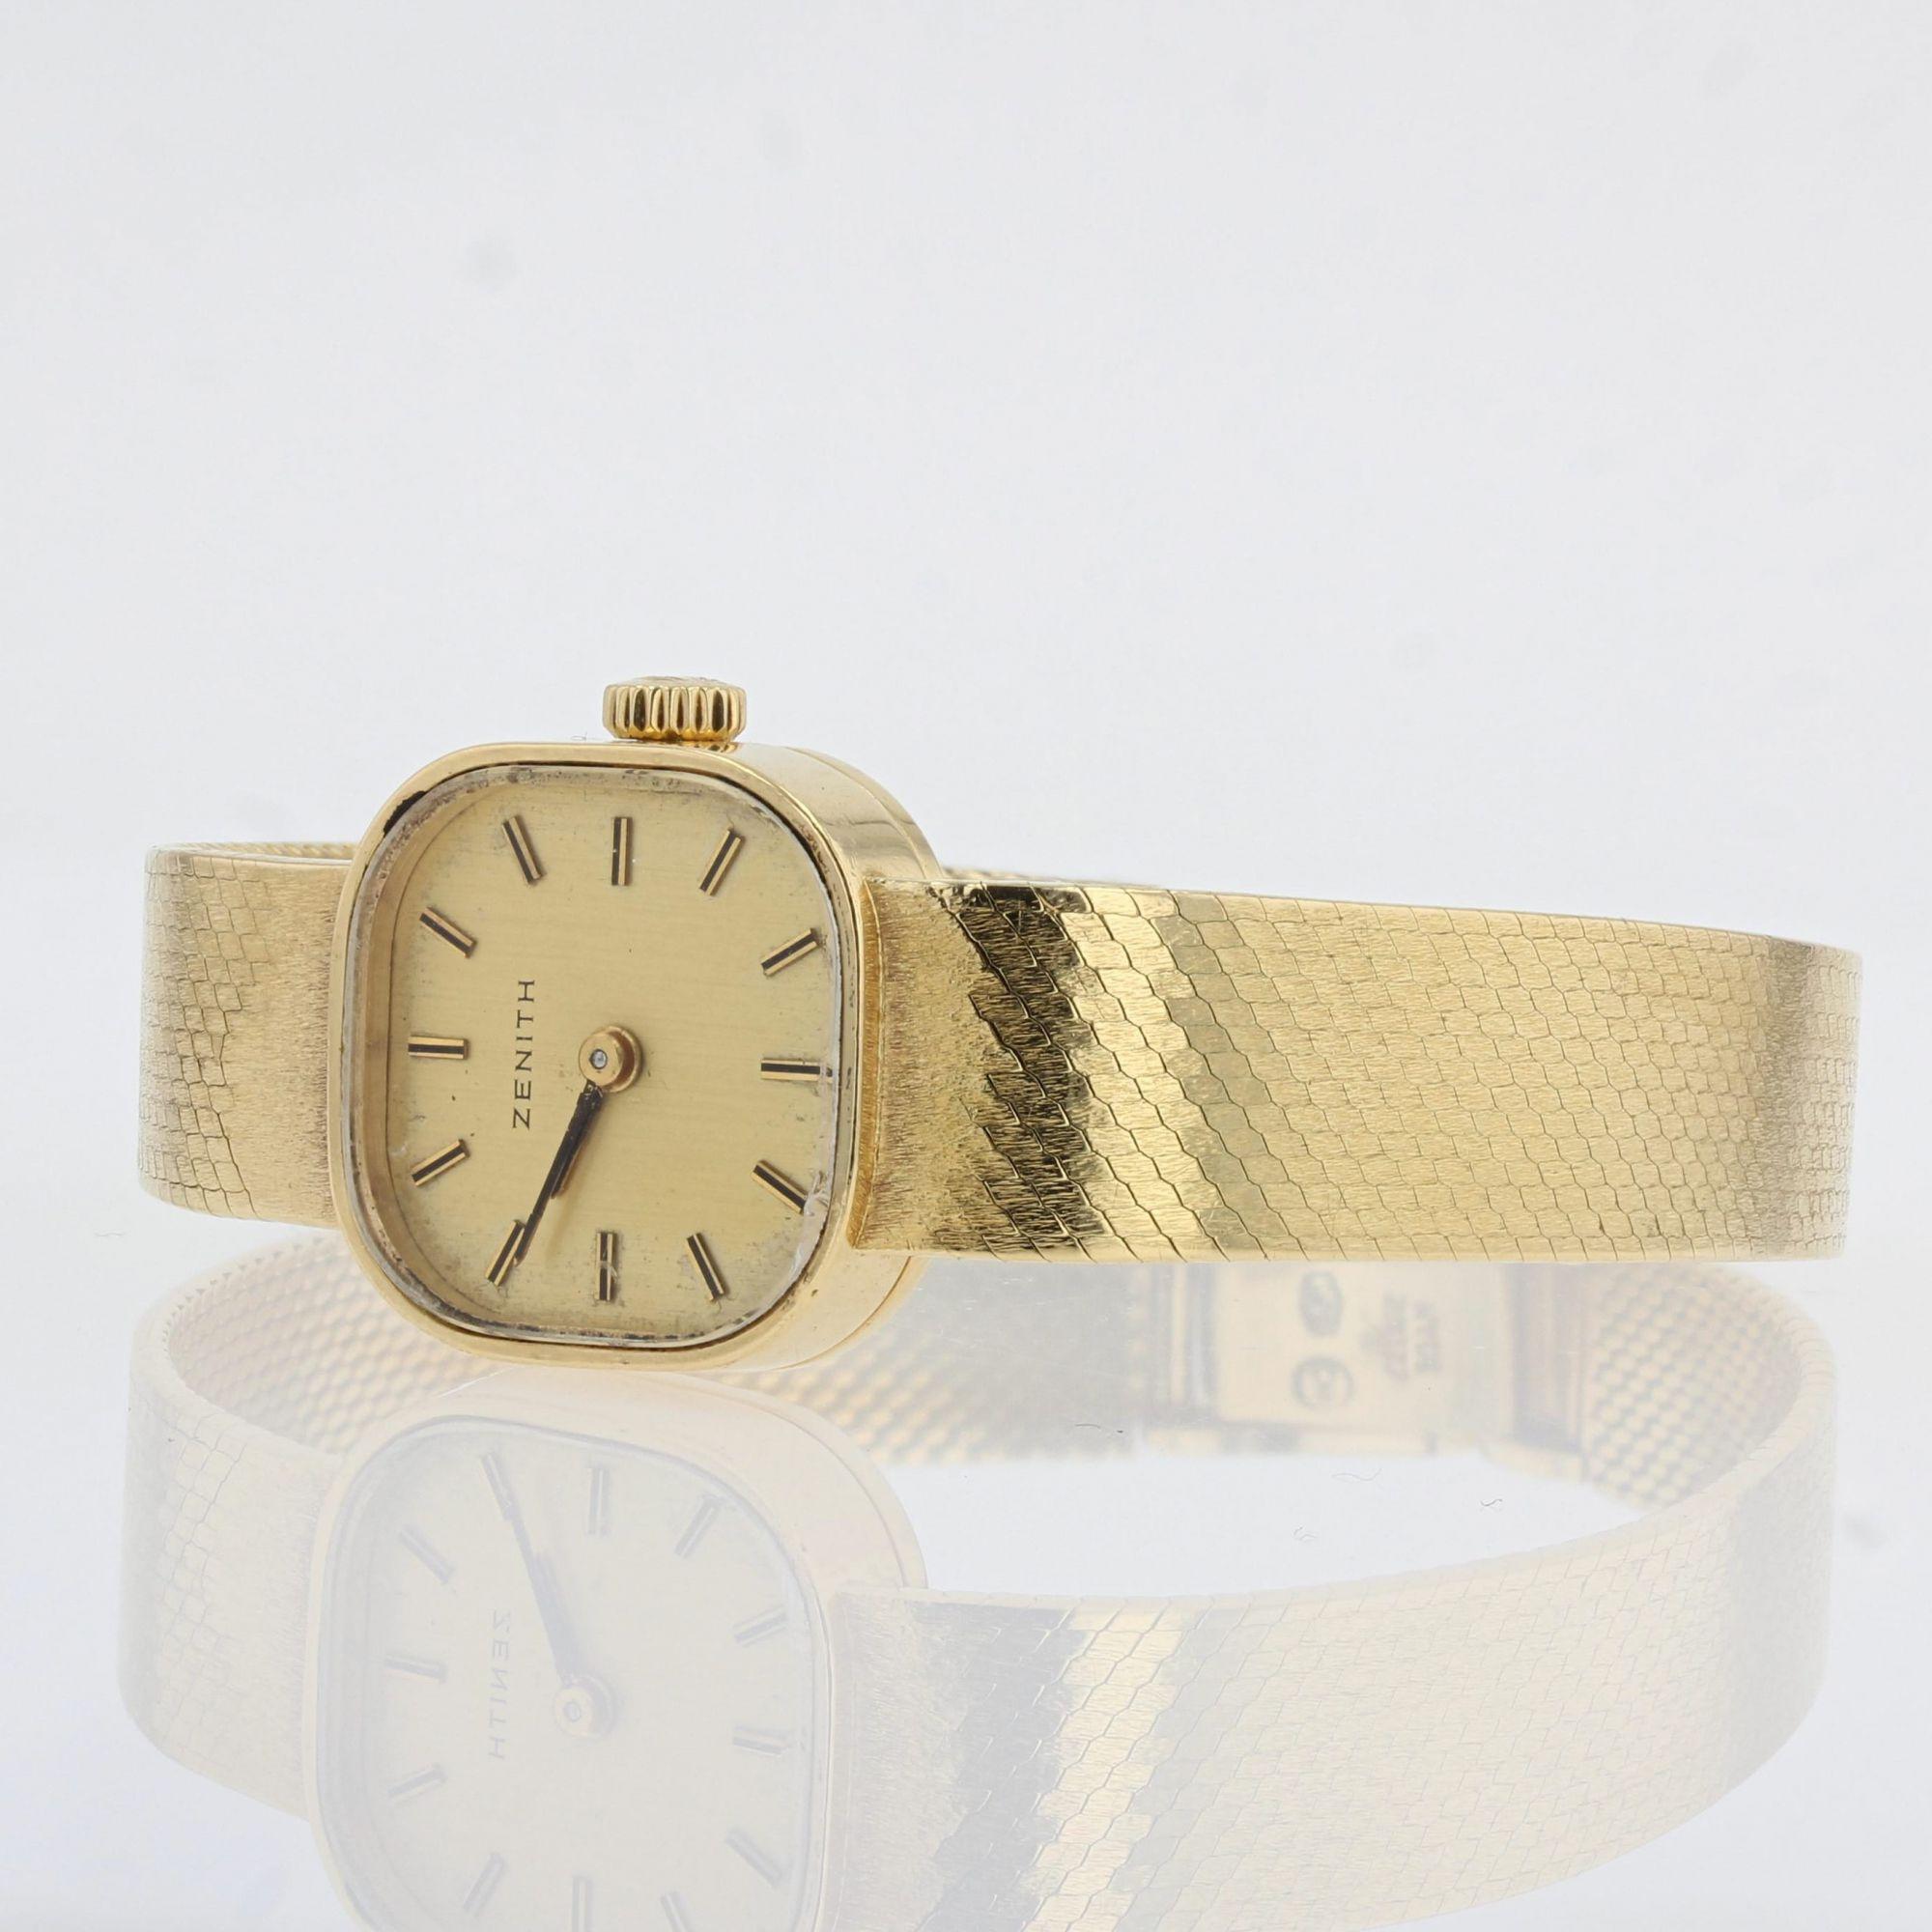 zenith gold watch 1960